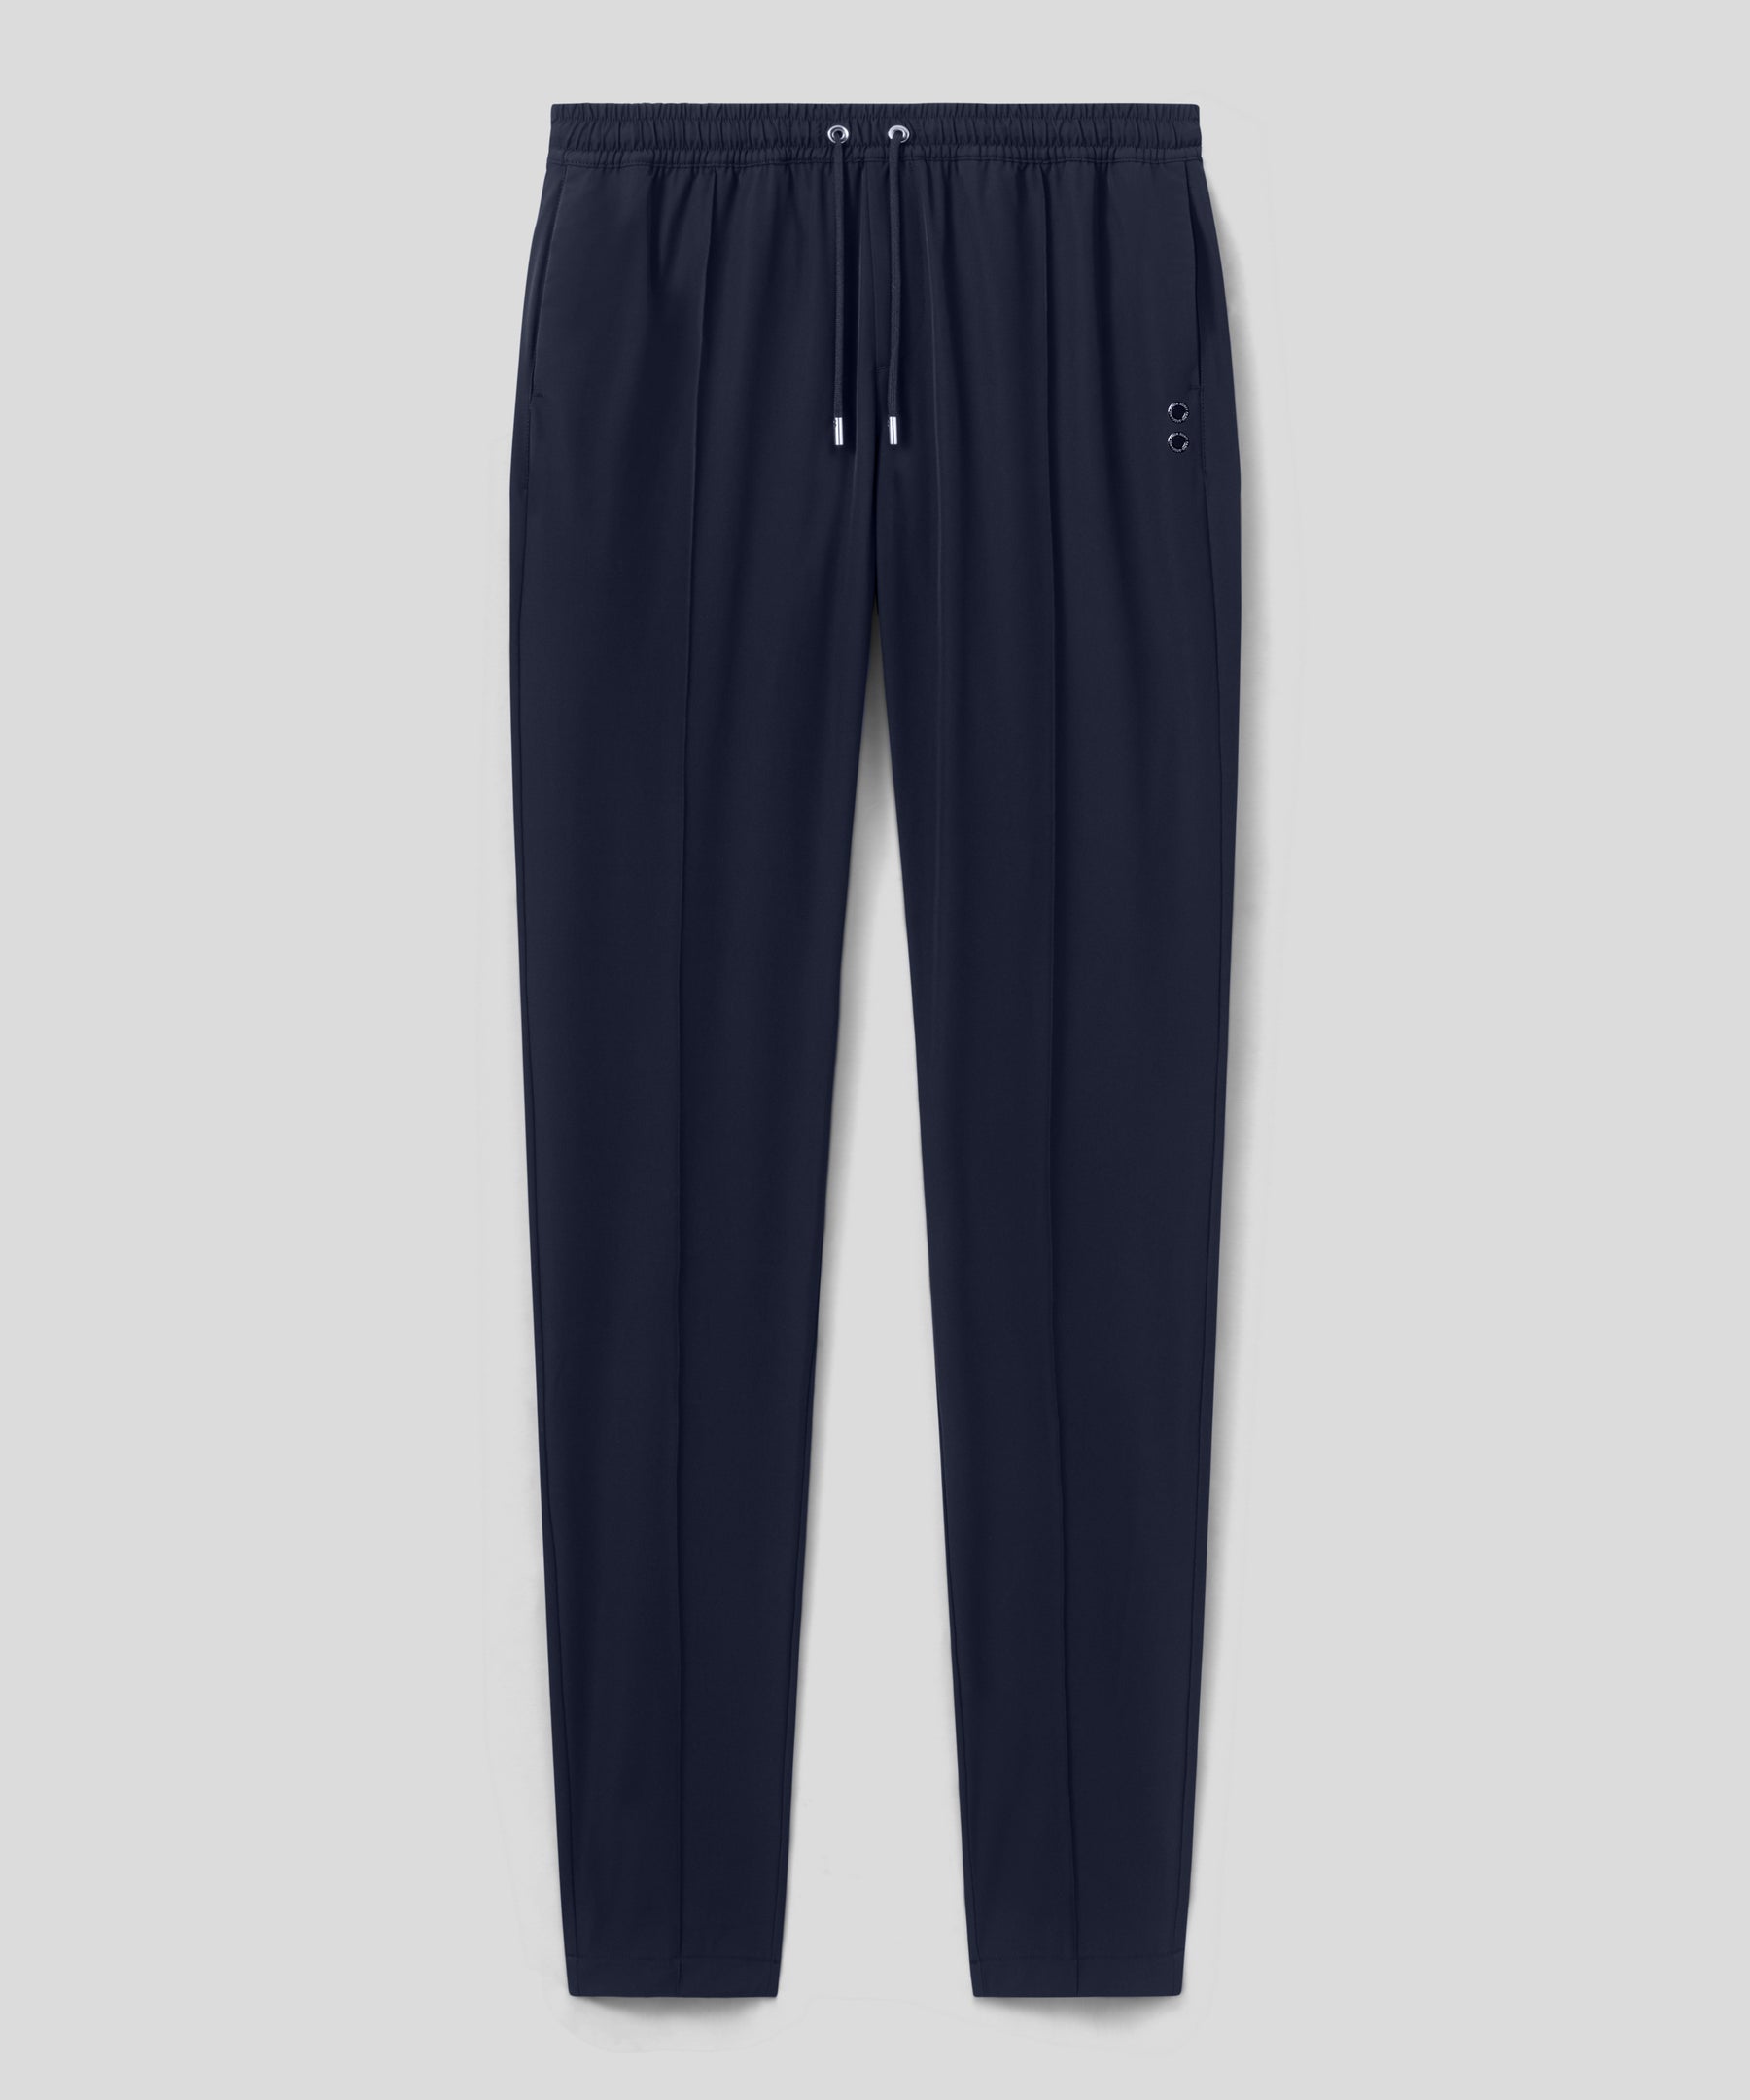 Pantalon léger coupe droite en polyamide: Bleu marine